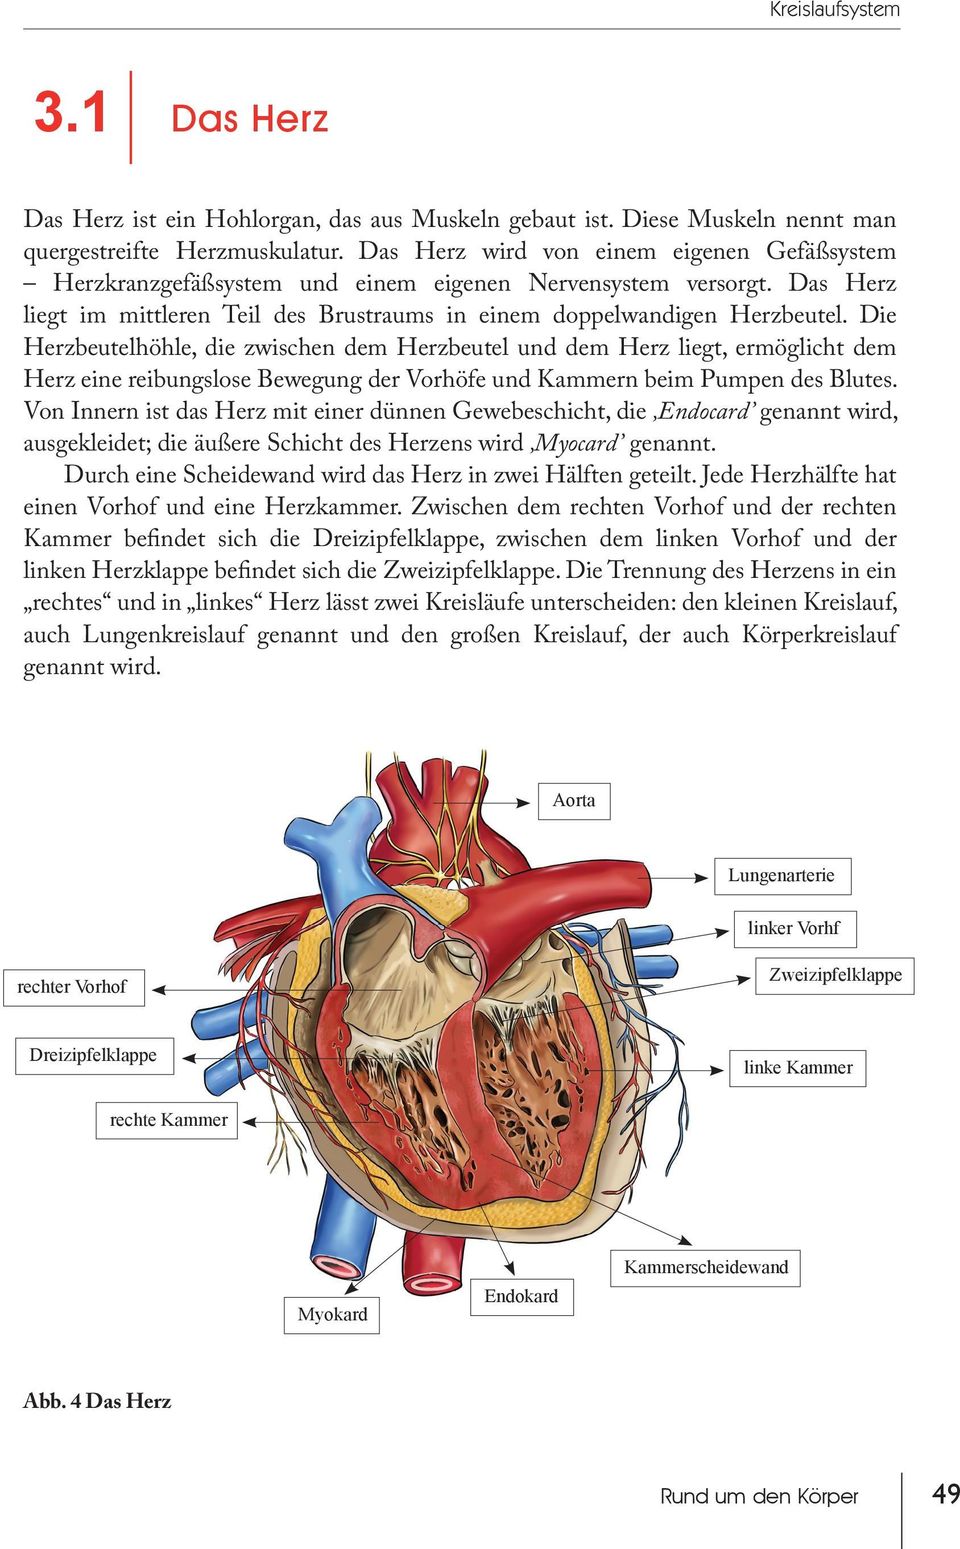 Die Herzbeutelhöhle, die zwischen dem Herzbeutel und dem Herz liegt, ermöglicht dem Herz eine reibungslose Bewegung der Vorhöfe und Kammern beim Pumpen des Blutes.